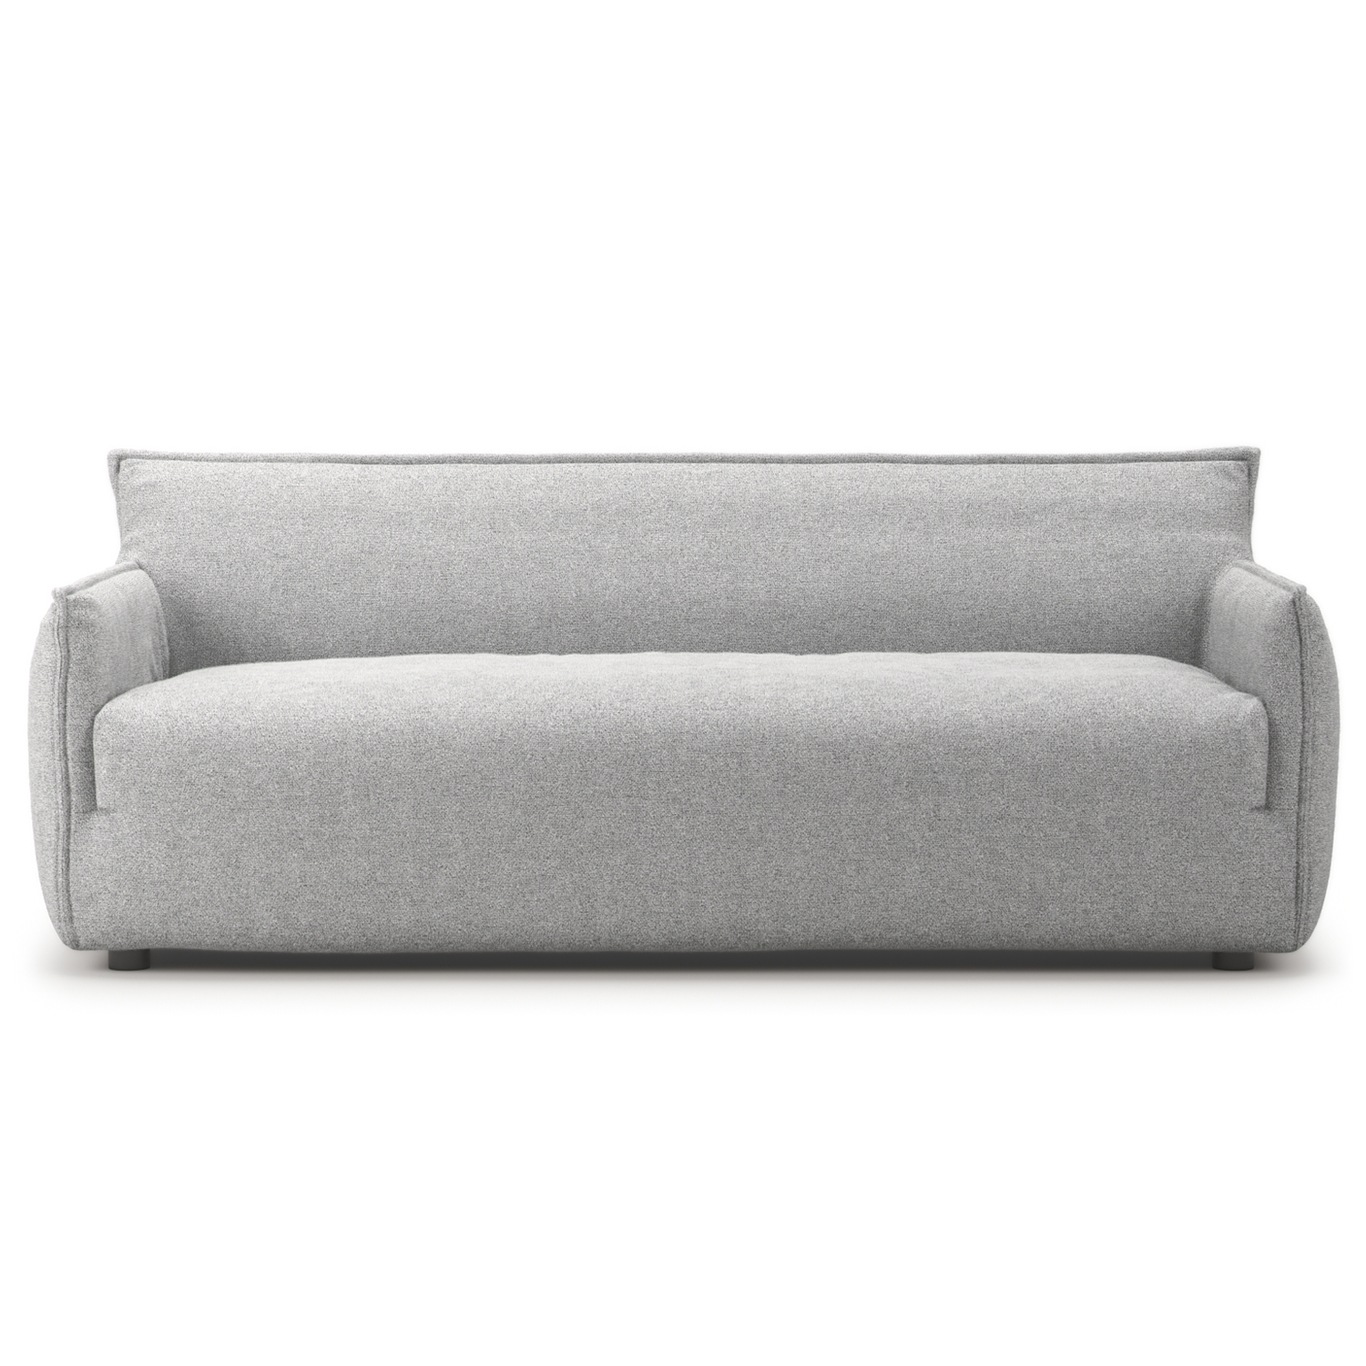 Le Petite 3-Sitzer-Sofa, Pacific white